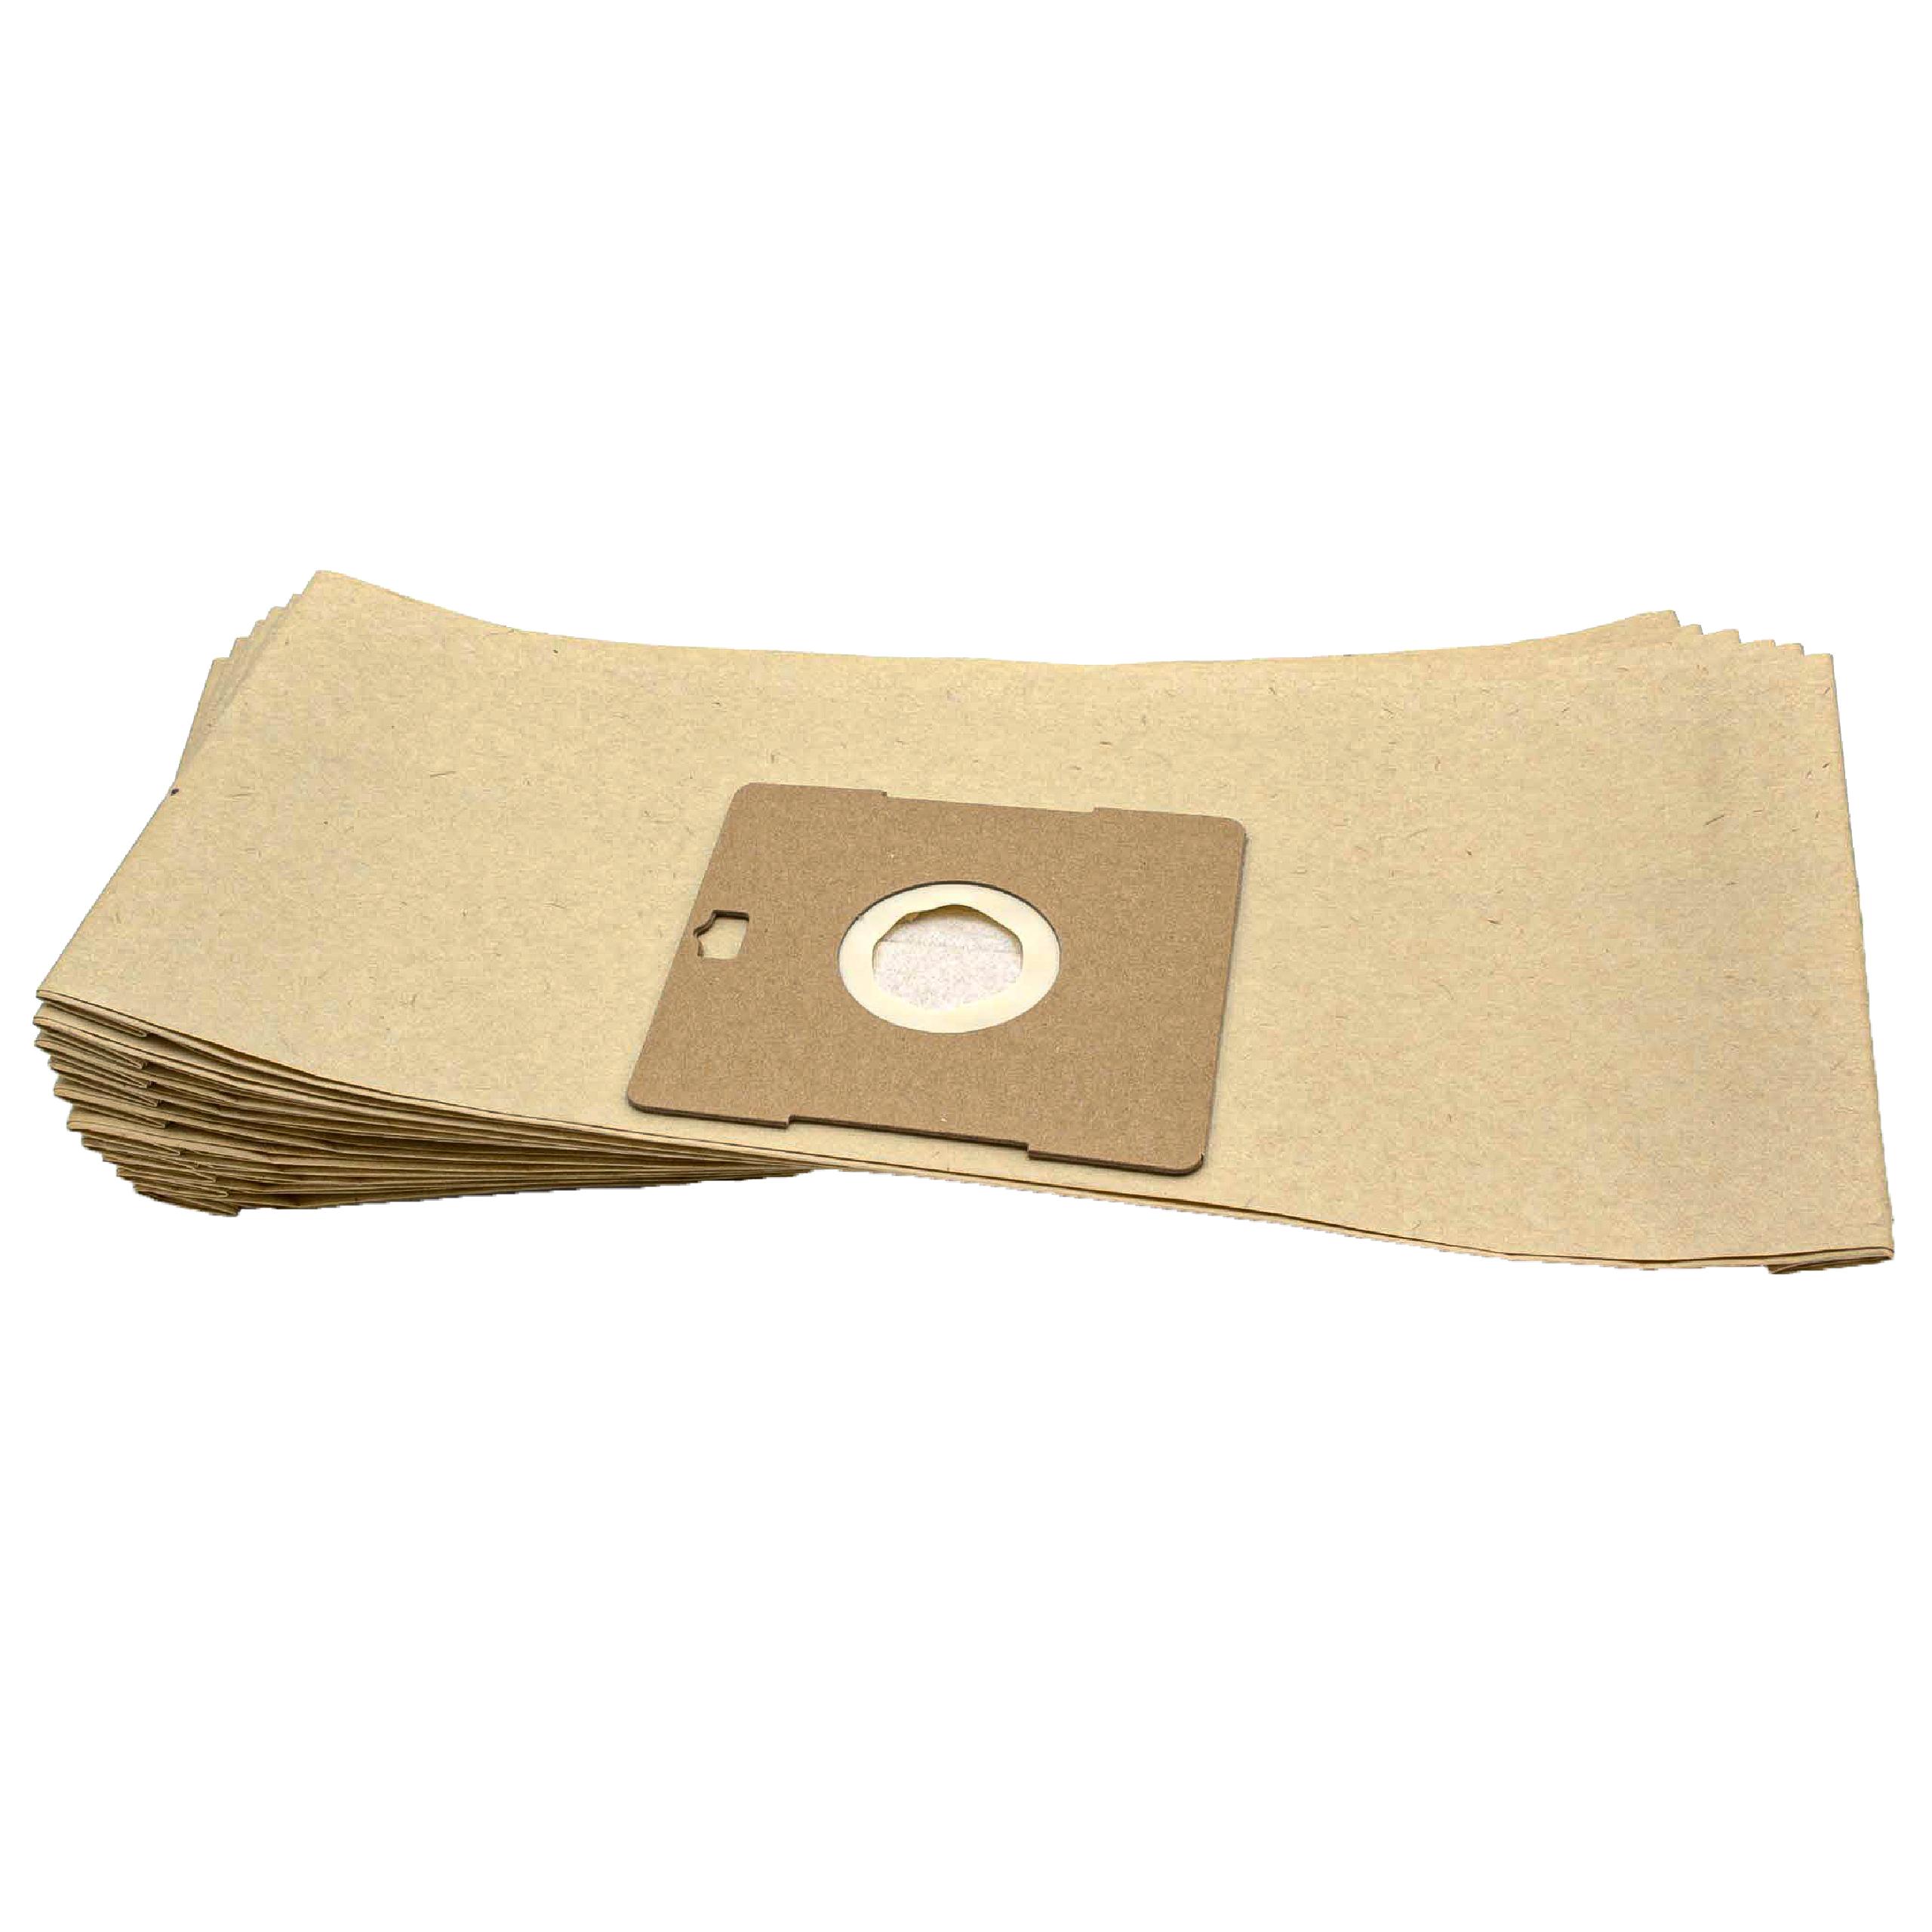 10x worek do odkurzacza AEG zamiennik Grundig Typ G - Hygiene Bag - papier